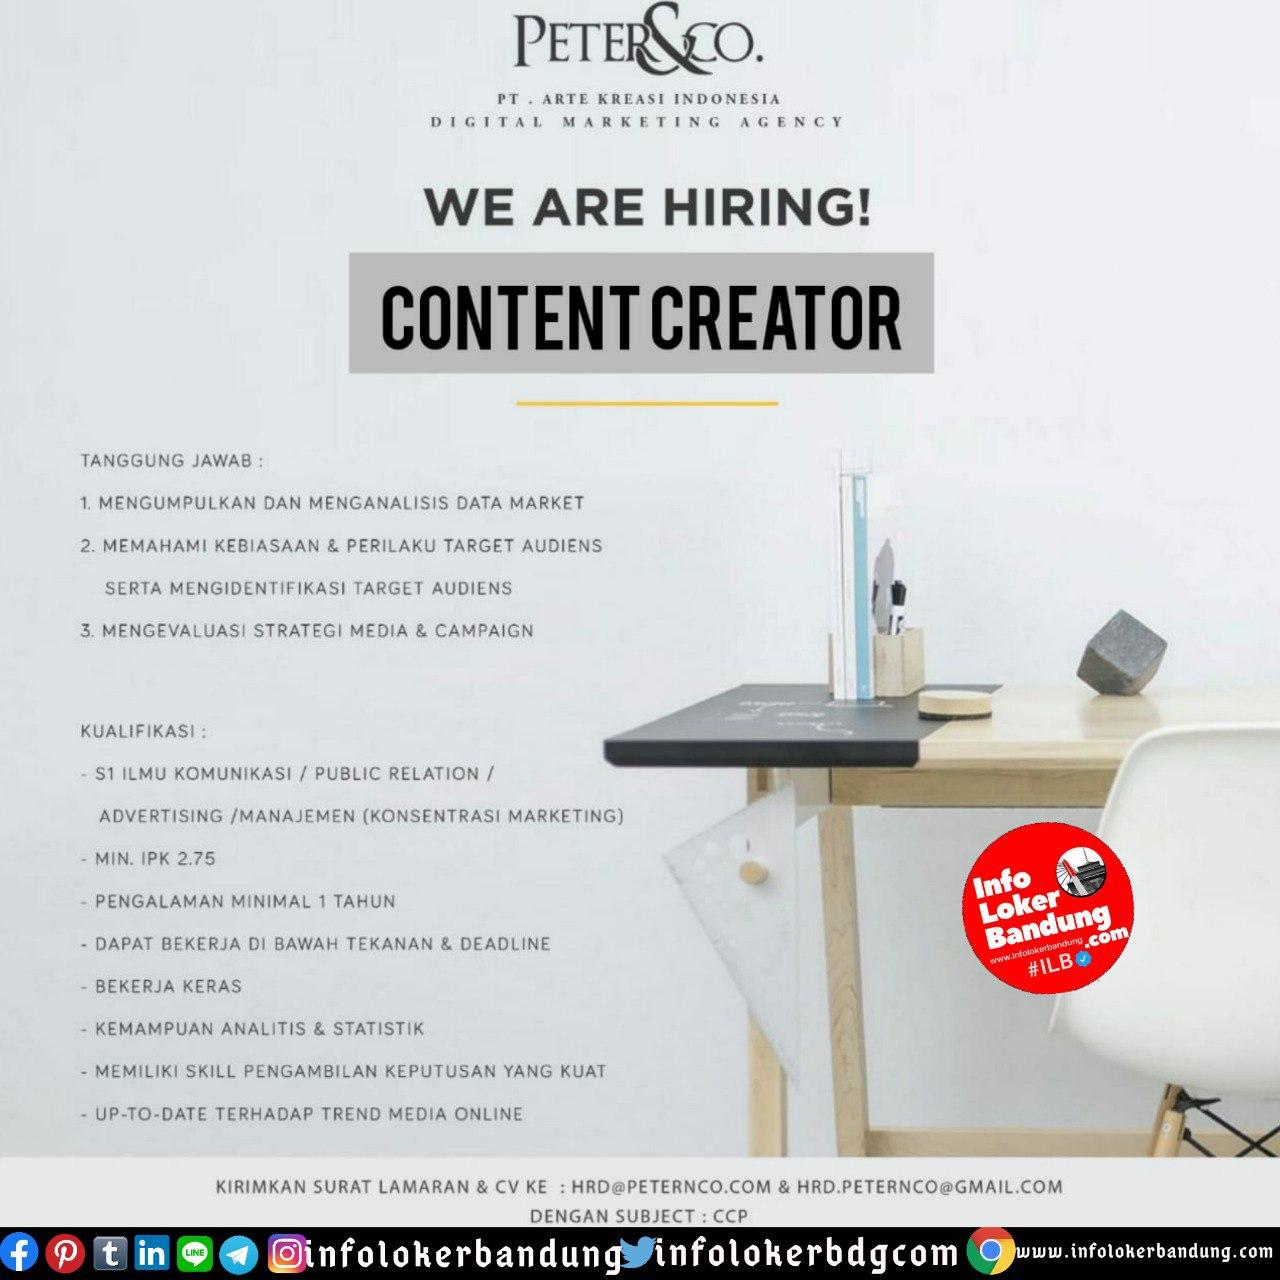 Lowongan Kerja PT. Arte Kreasi Indonesia (Peter&Co) Bandung Juli 2020